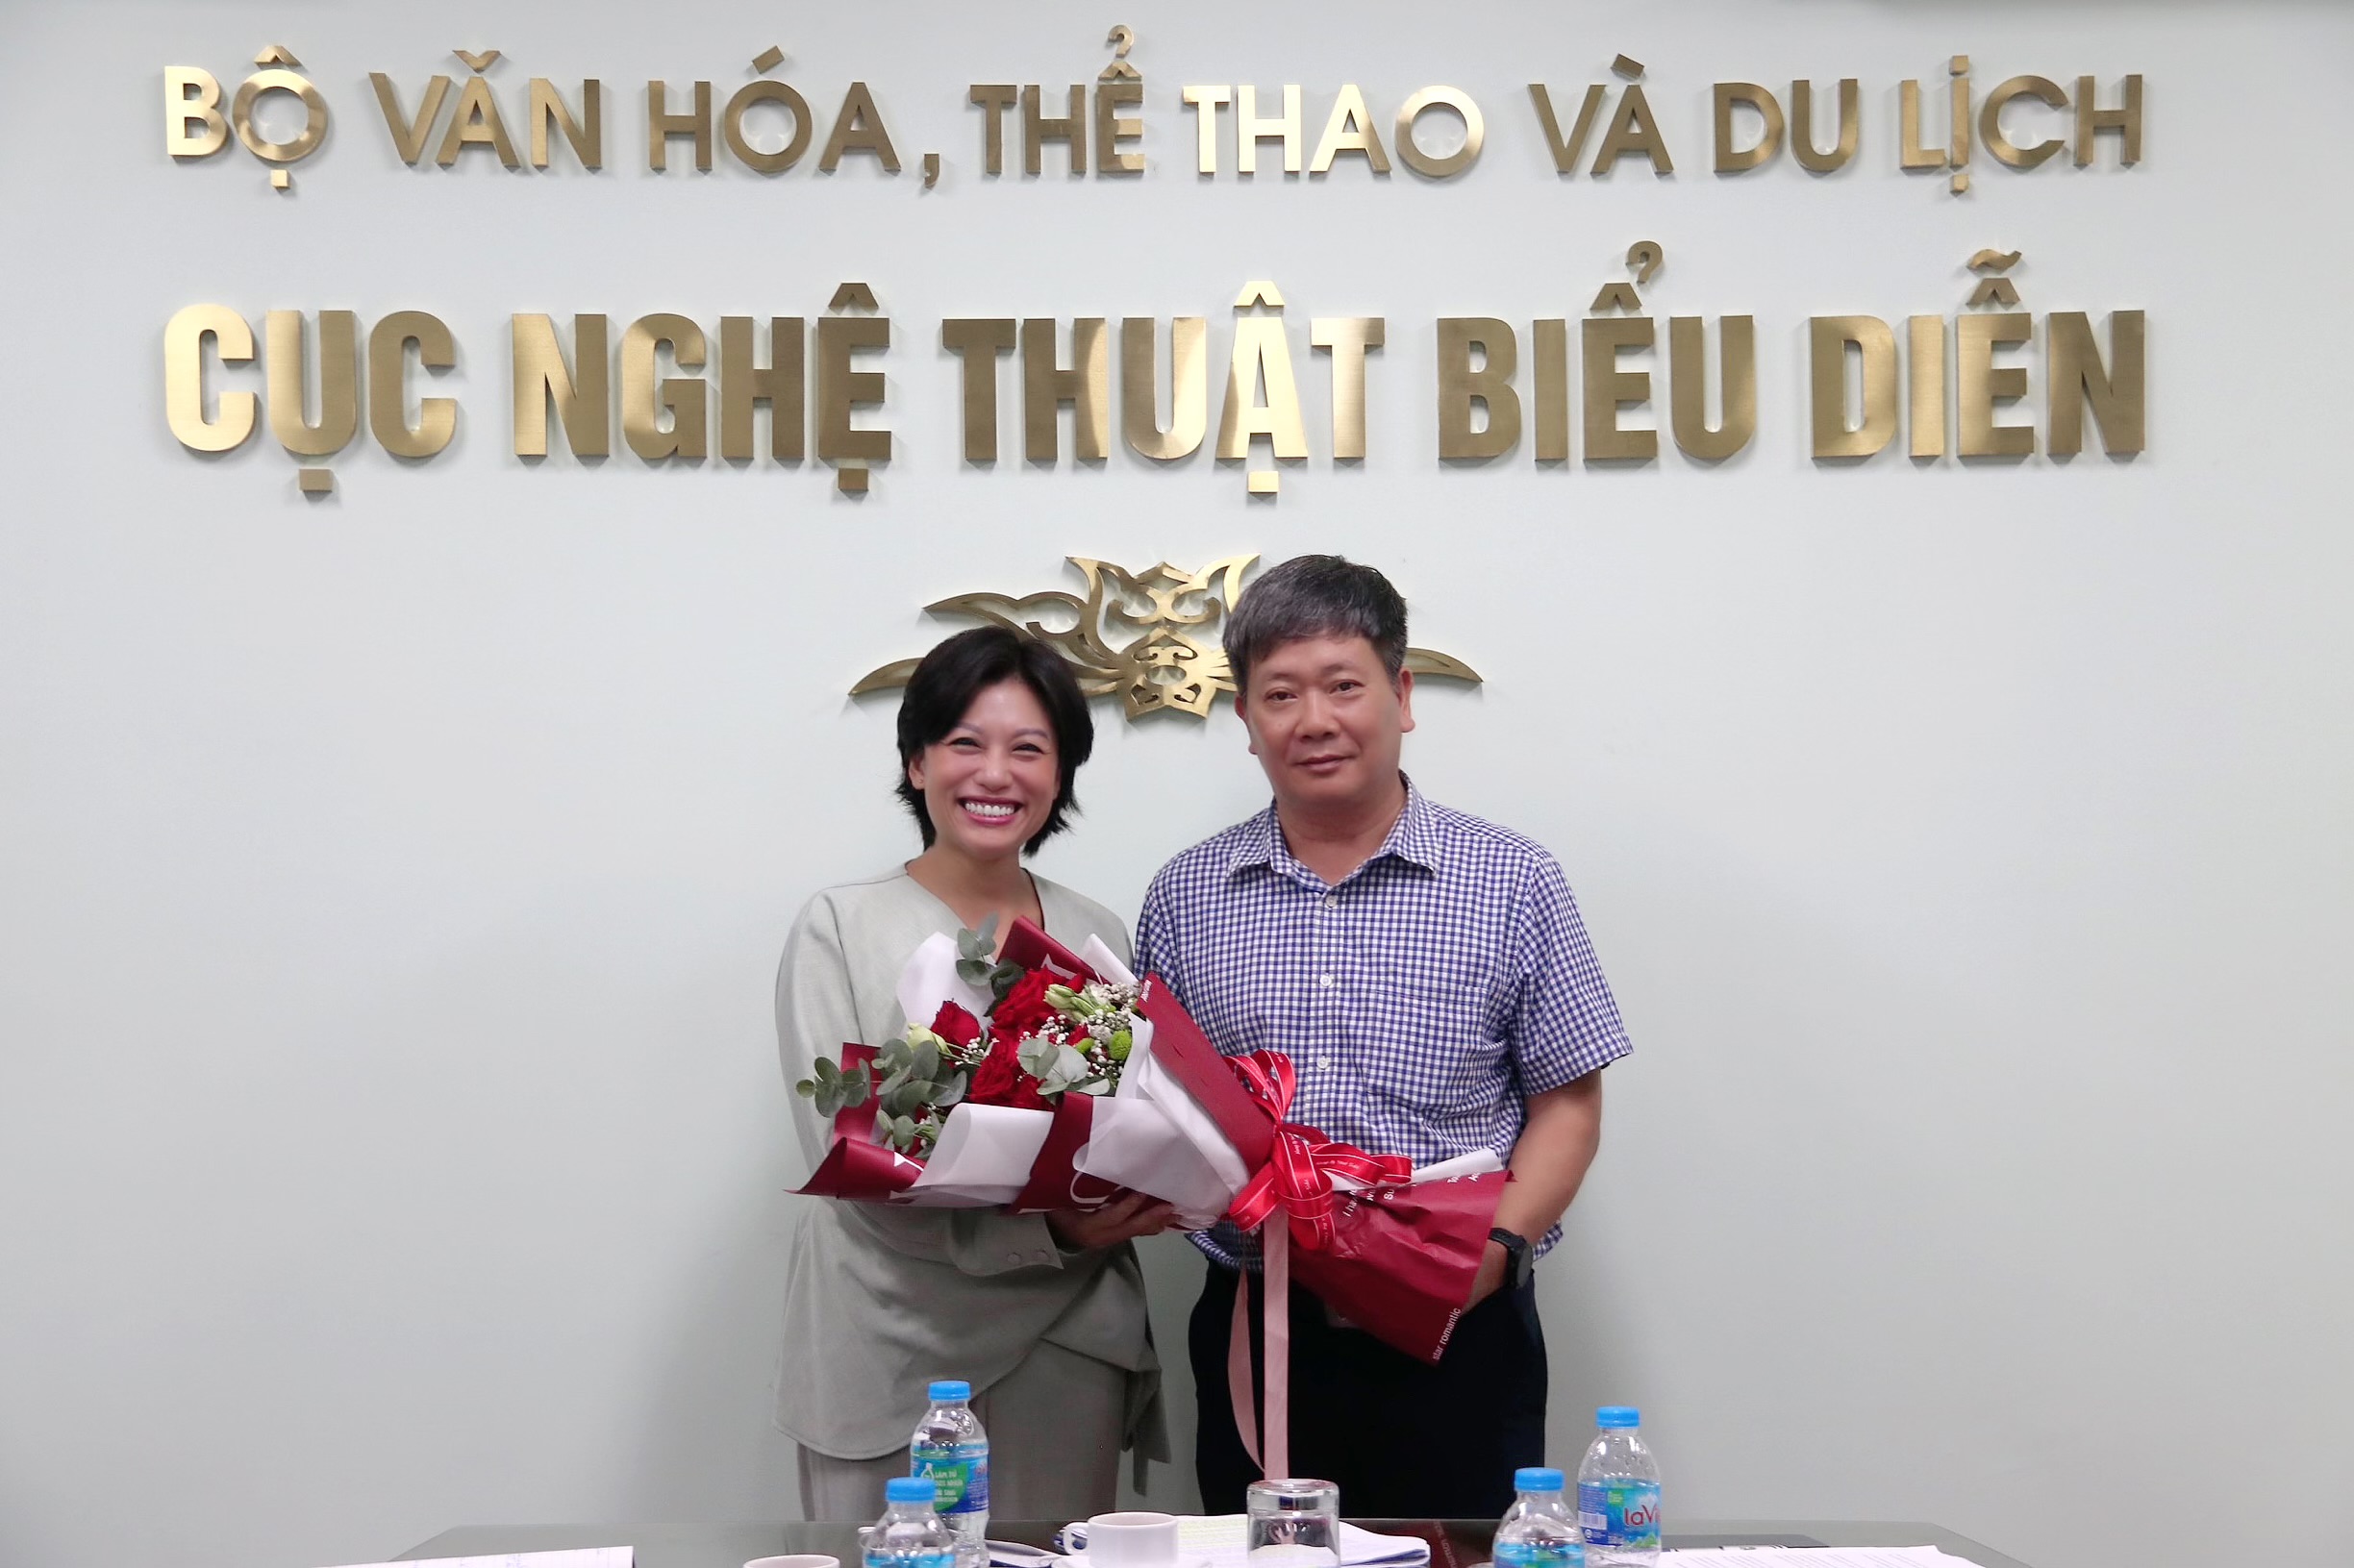 Đồng chí Trần Ly Ly được bầu làm Bí thư Chi bộ Cục Nghệ thuật biểu diễn nhiệm kỳ 2020-2025.